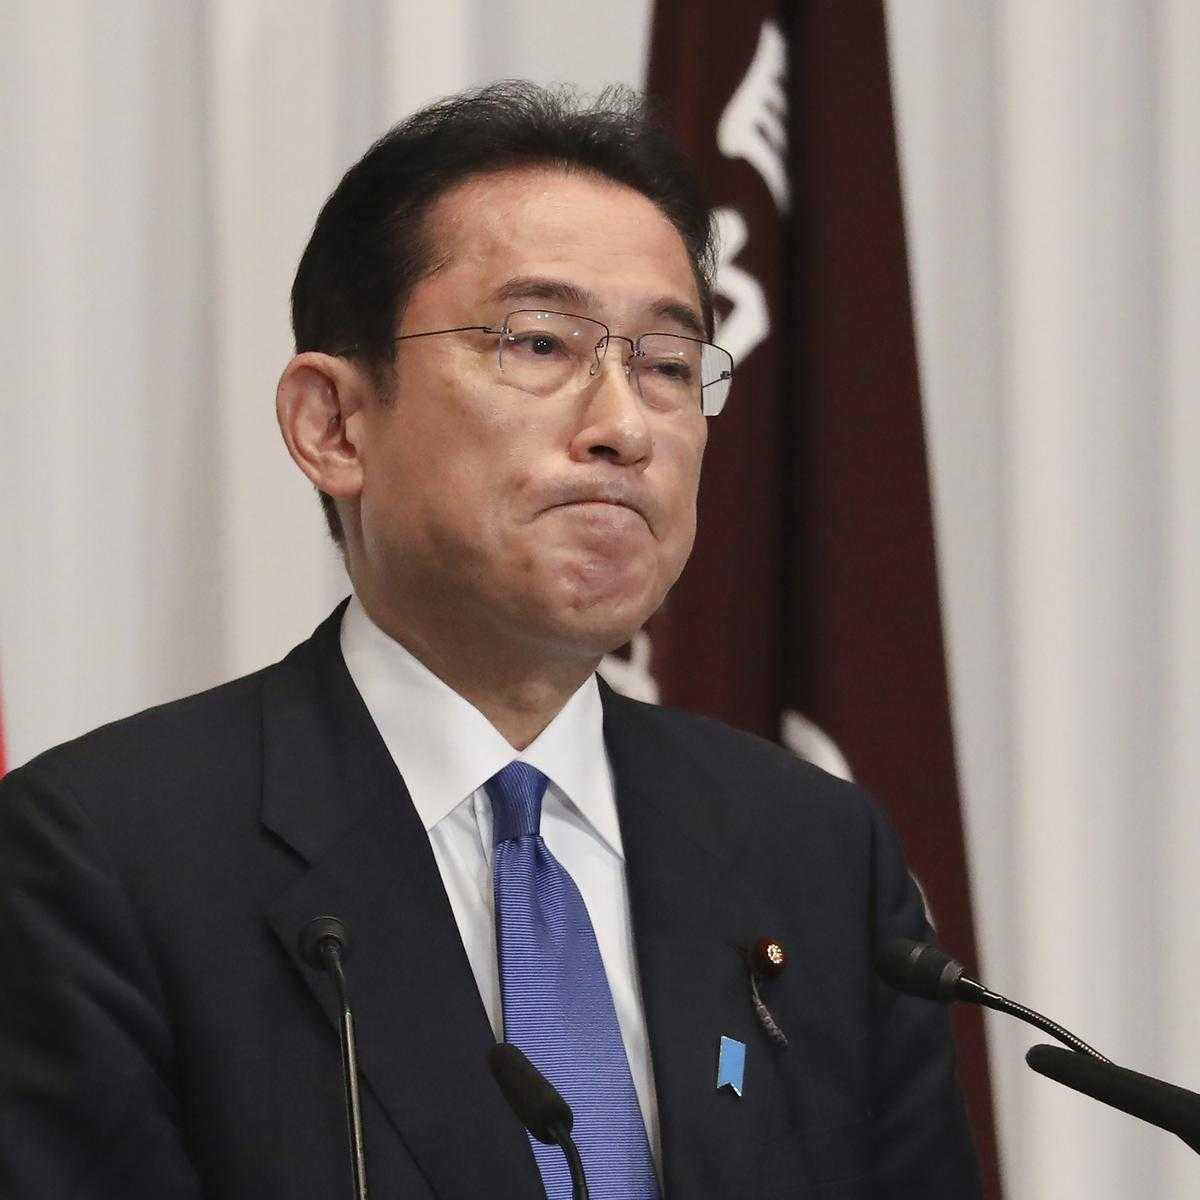 Tingkat Kepercayaan Terhadap PM Jepang Menurun! Ternyata Penyebabnya Berhubungan dengan Shinzo Abe